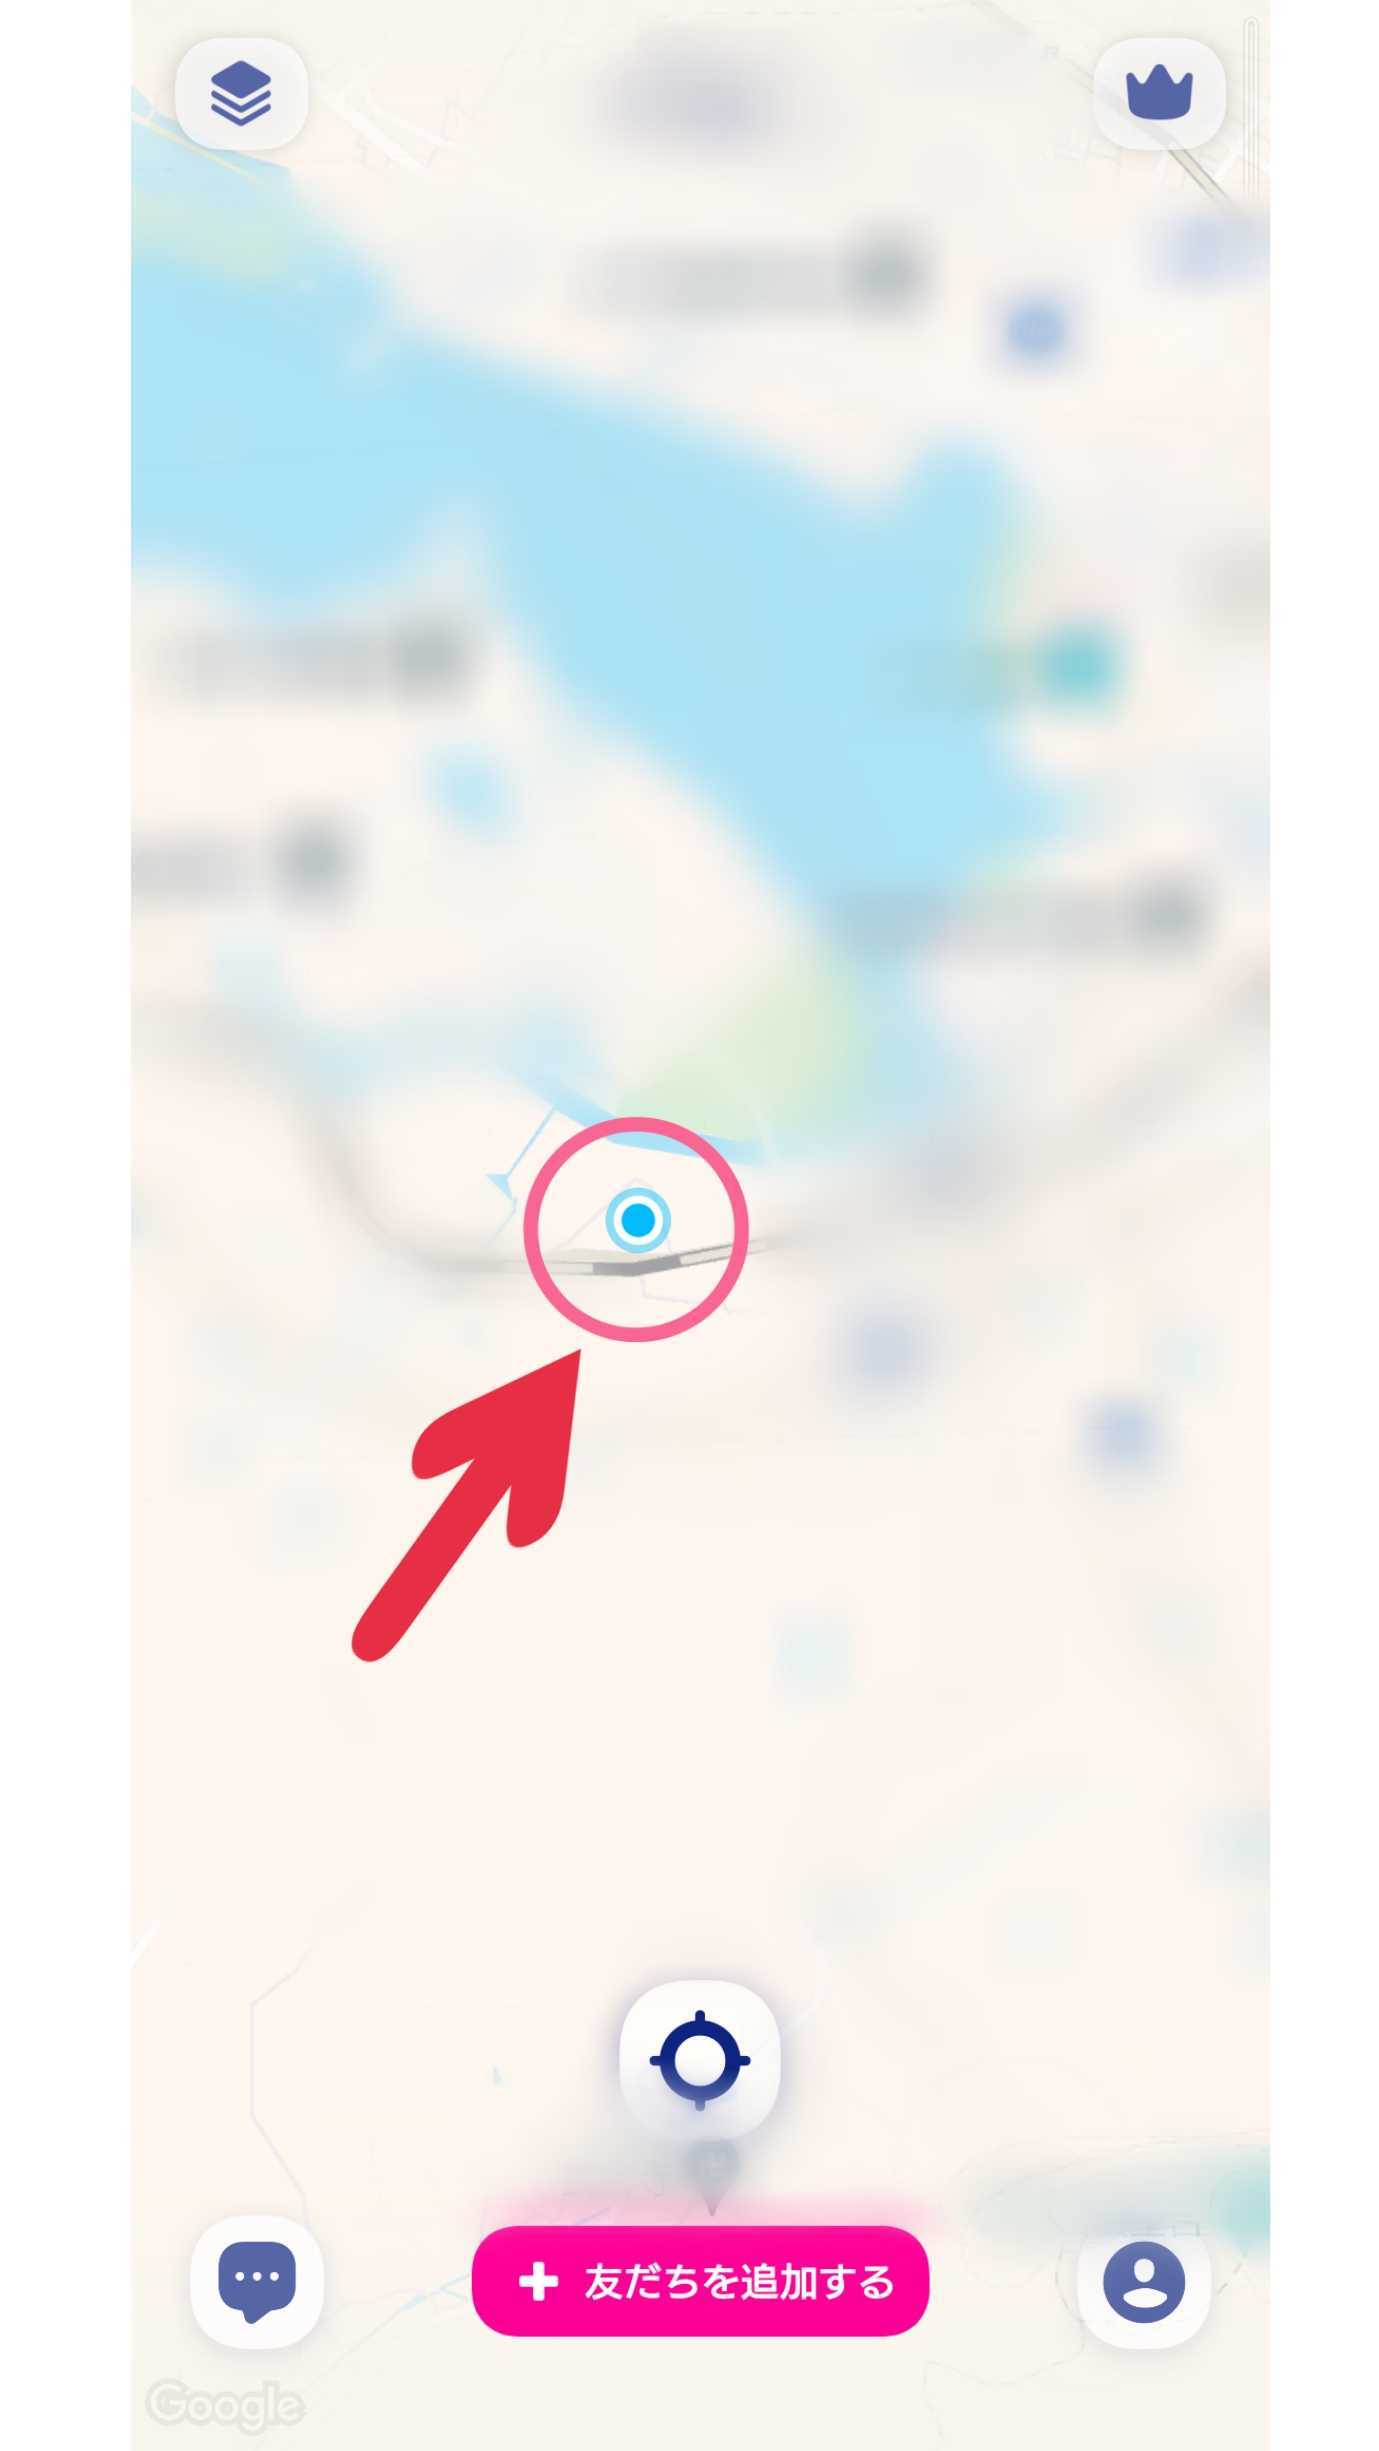 Zenly　地図　居場所　マーク　青い丸　例